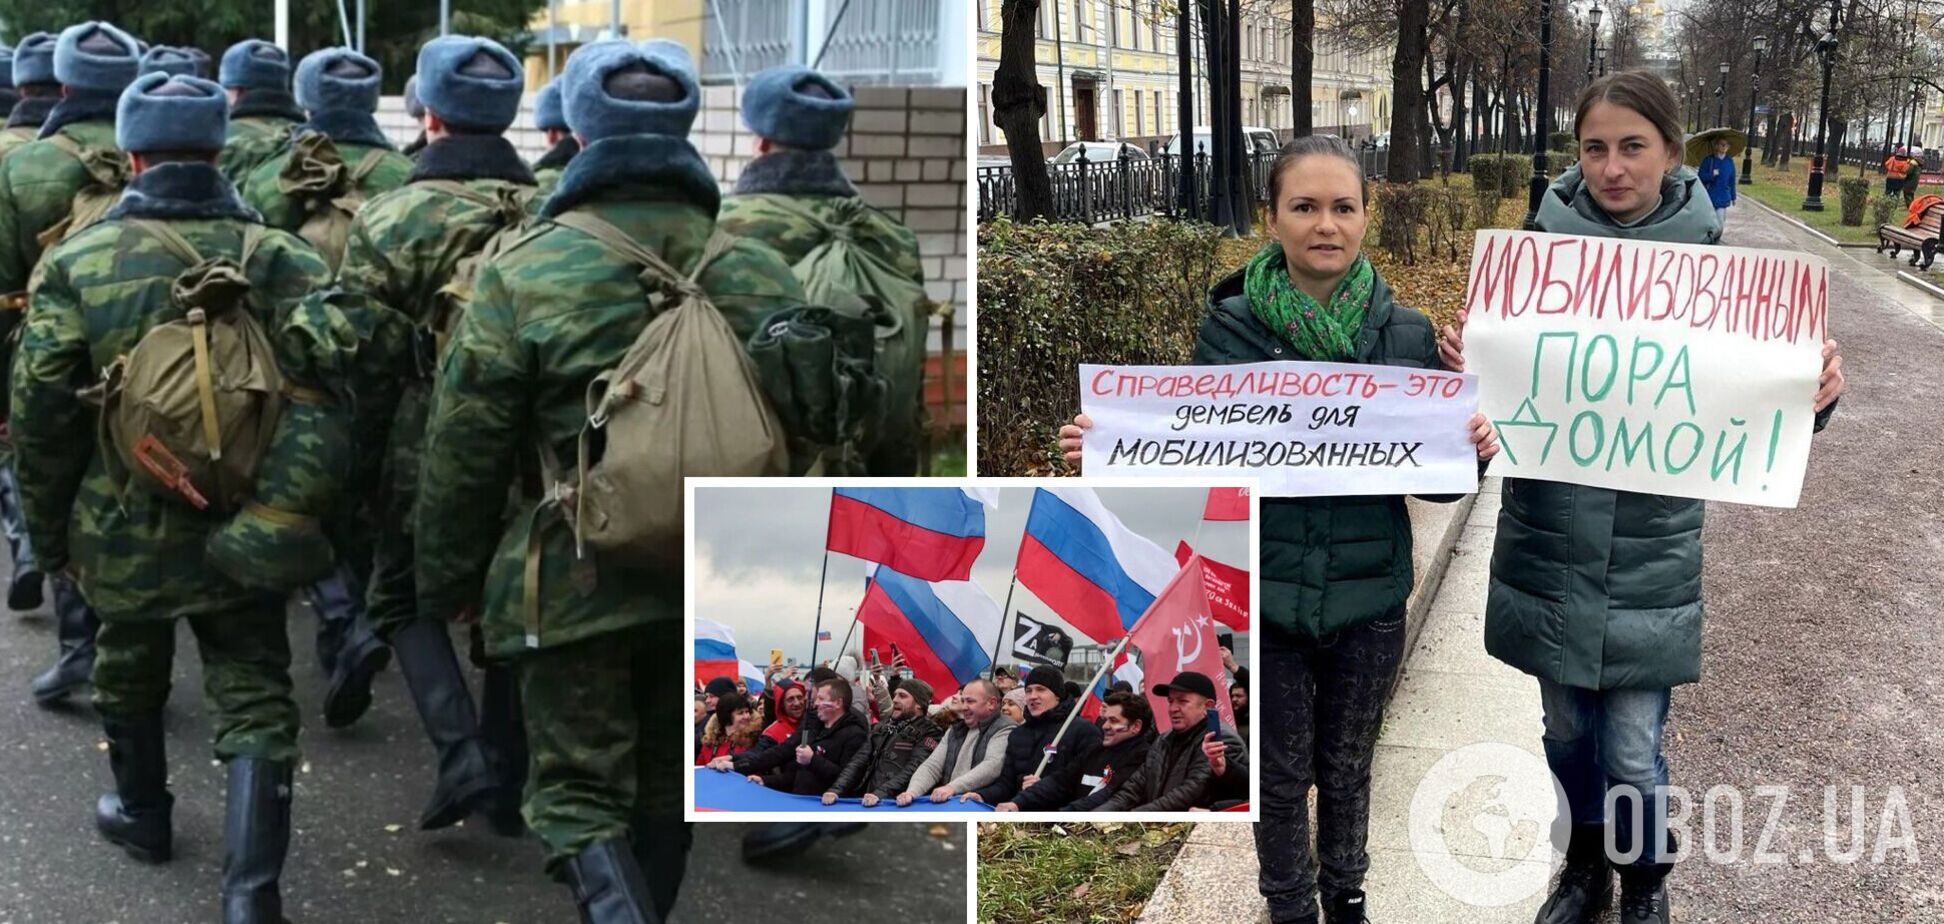 'Нас на*бали і вас на*буть': дружини російських мобілізованих написали відкритого листа до громадян РФ